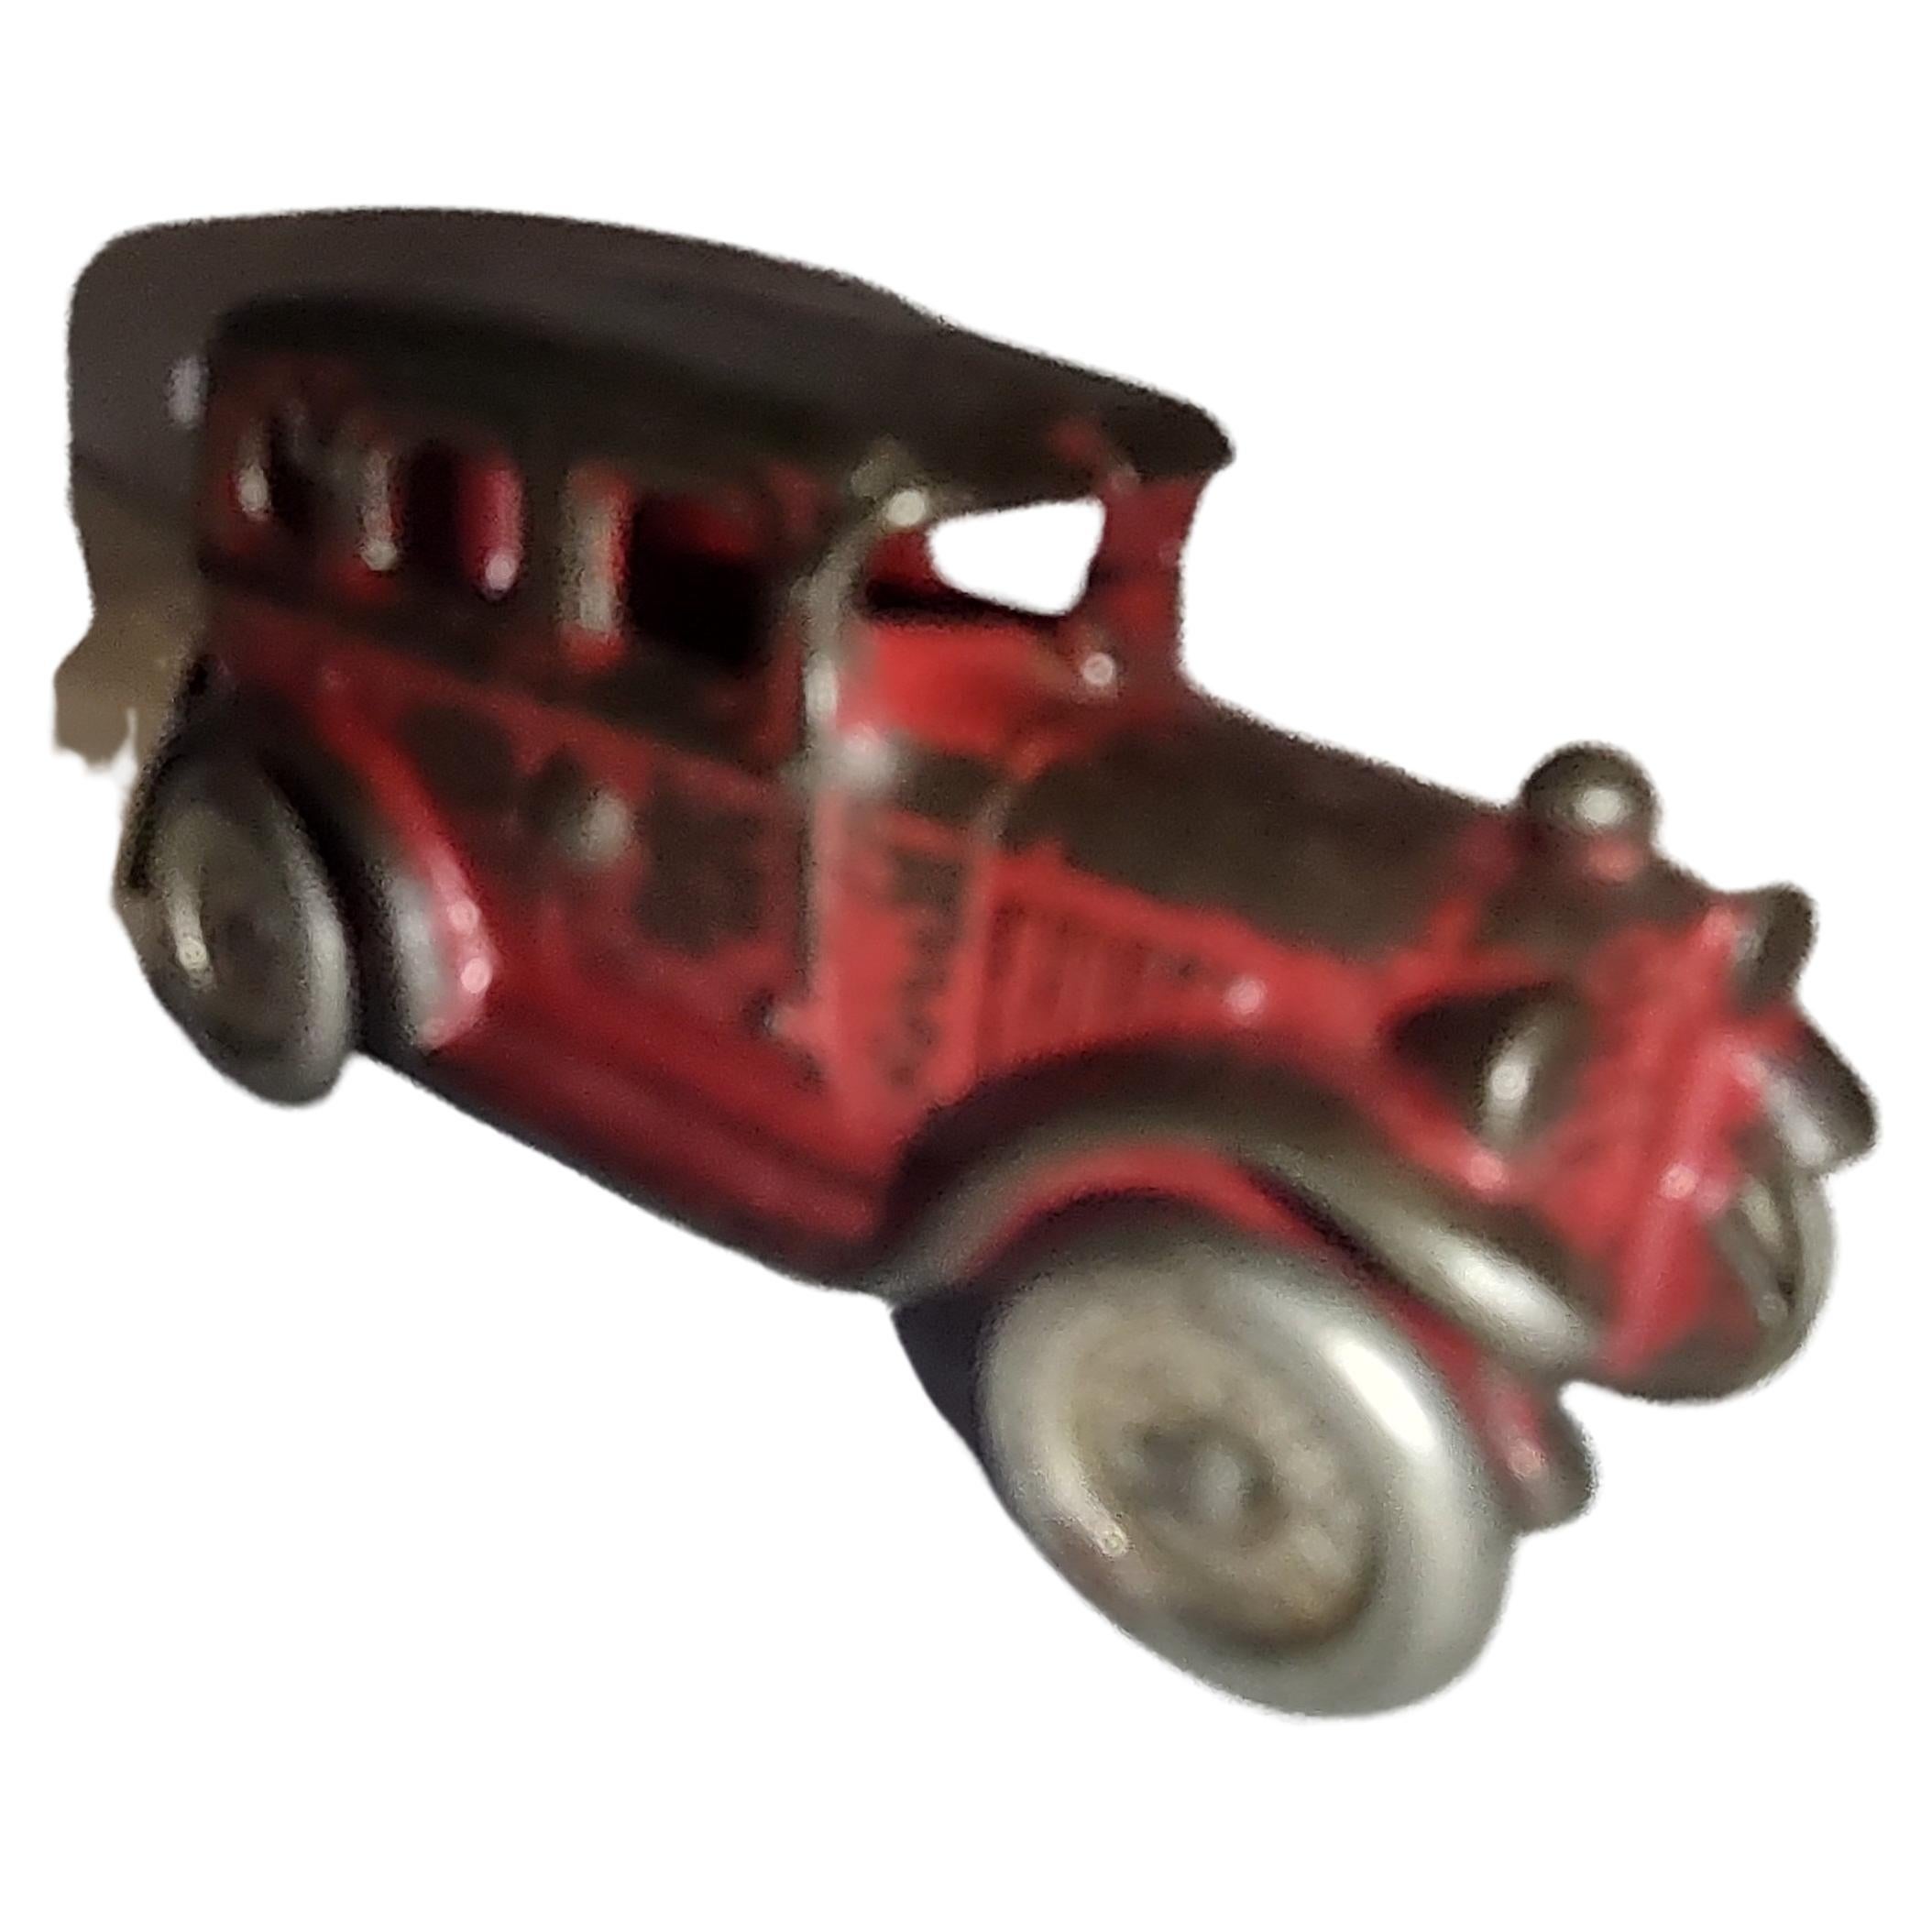 Ein gusseisernes Spielzeugwagen aus dem frühen 20. Jahrhundert von A C Williams, original rot mit Nickelrädern